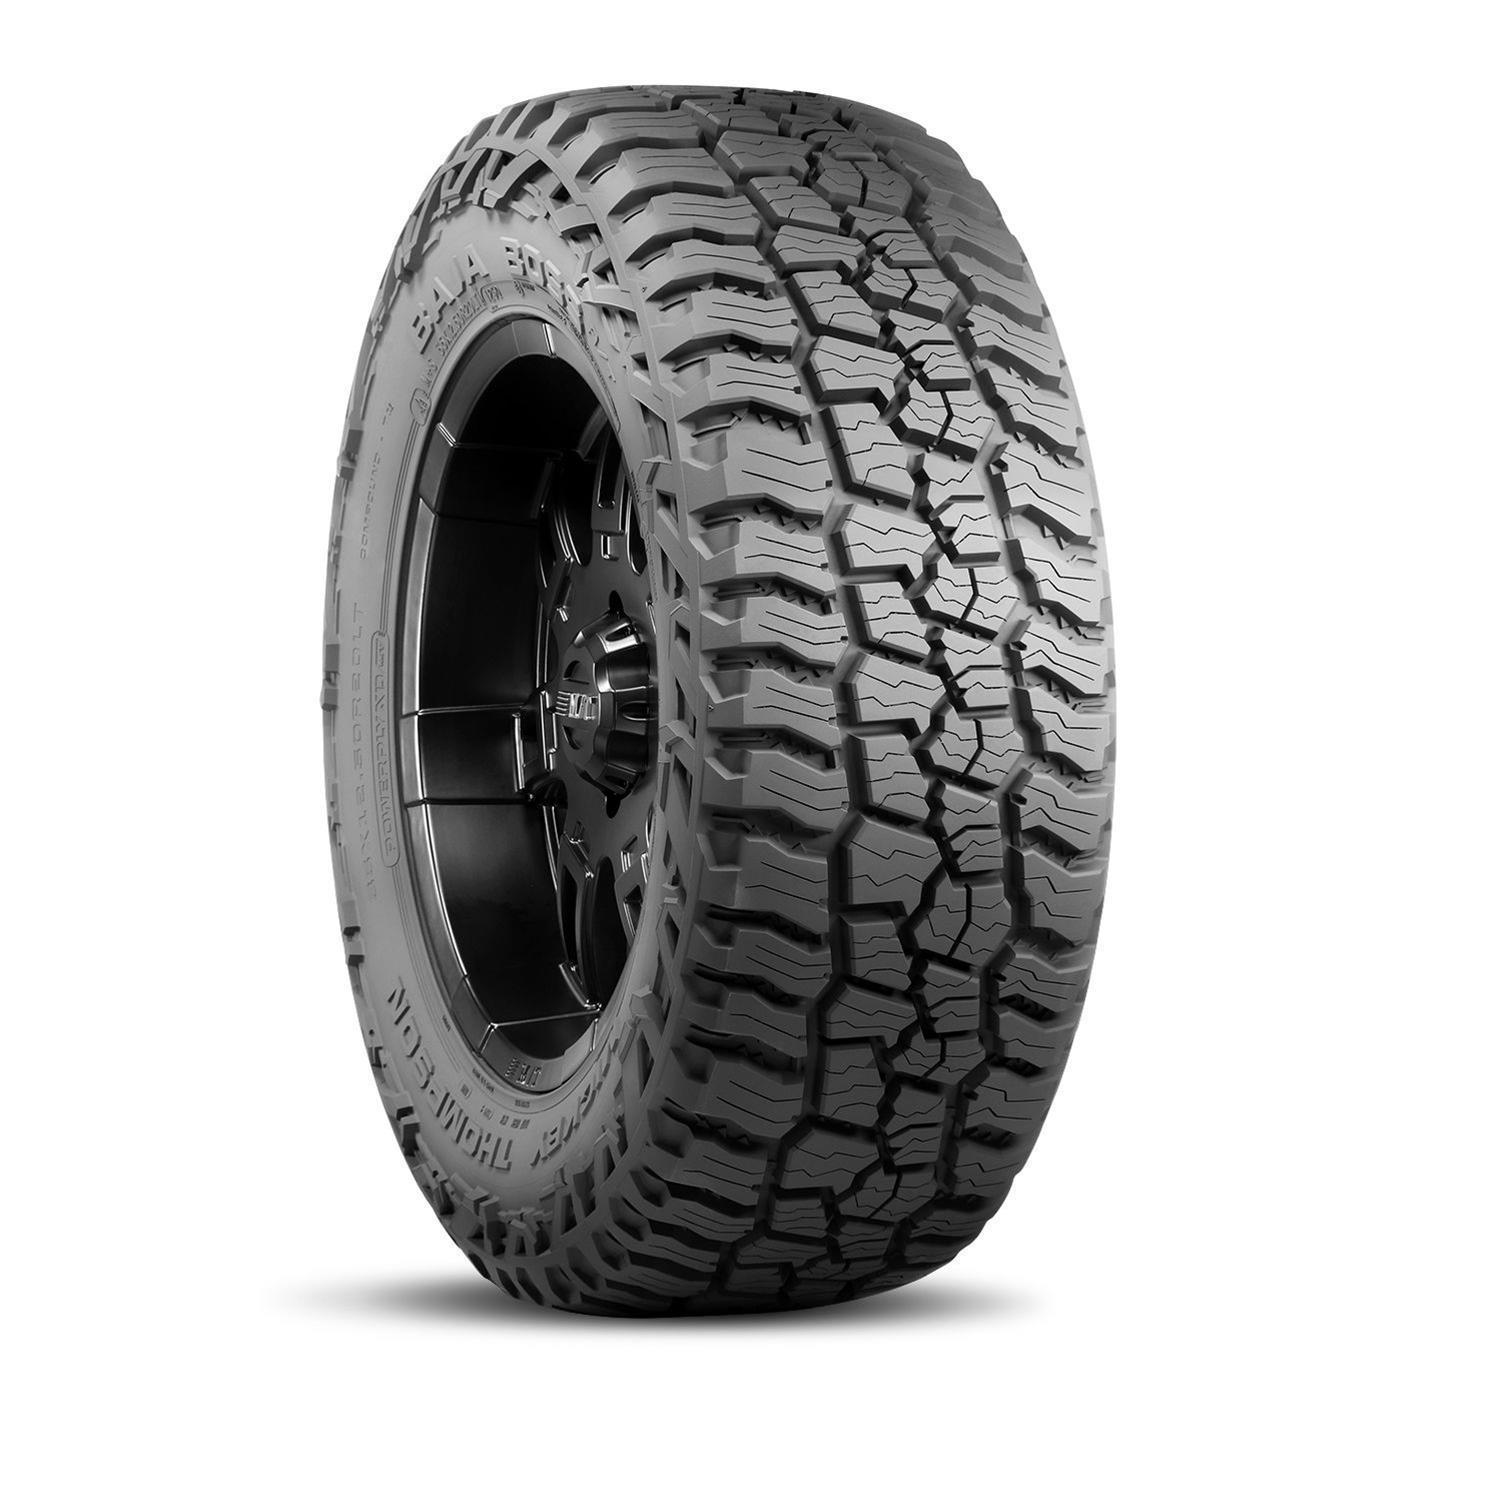 Baja Boss A/T Tire 35x15.50R20LT 127Q - Burlile Performance Products